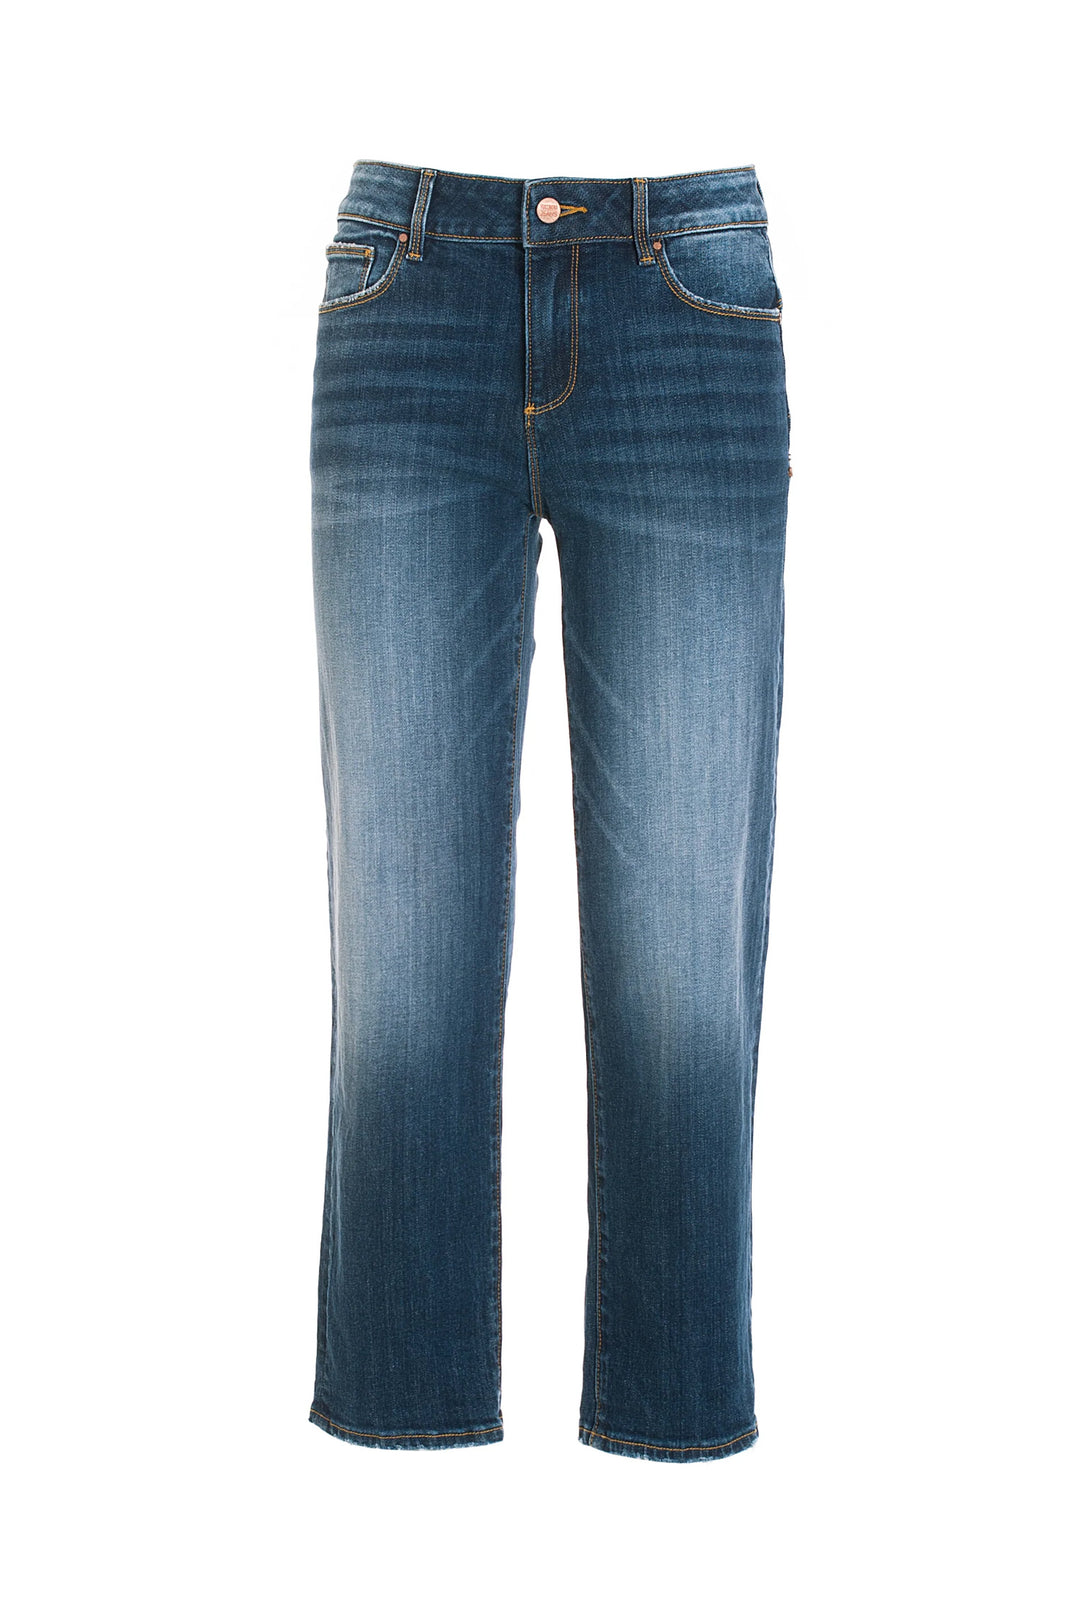 FRACOMINA Jeans linea dritta effetto shape up in denim con lavaggio medio - Mancinelli 1954